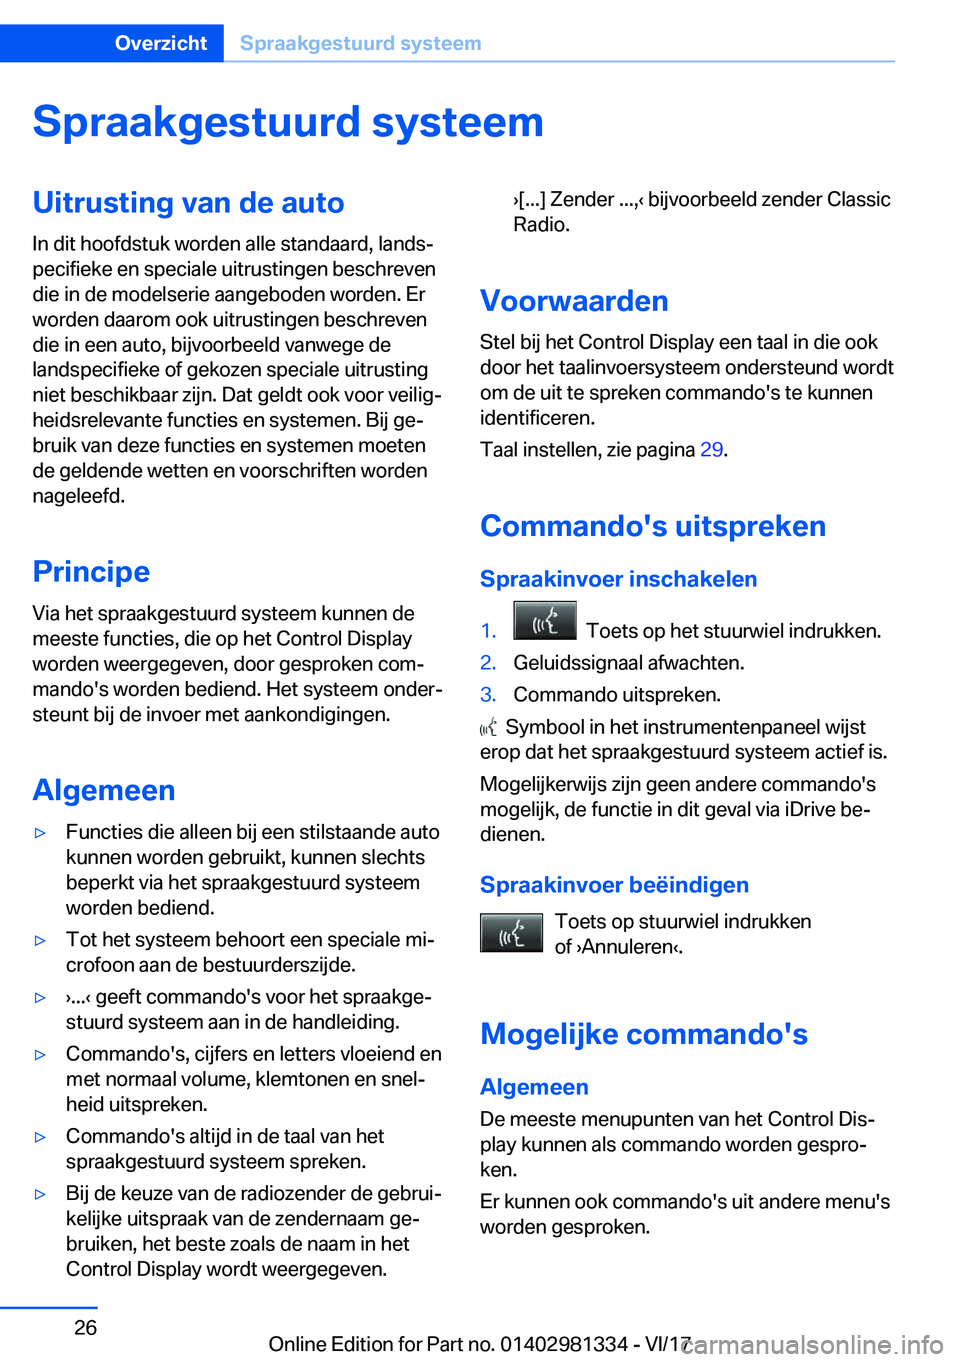 BMW X4 2018  Instructieboekjes (in Dutch) �S�p�r�a�a�k�g�e�s�t�u�u�r�d��s�y�s�t�e�e�m�U�i�t�r�u�s�t�i�n�g��v�a�n��d�e��a�u�t�o�I�n� �d�i�t� �h�o�o�f�d�s�t�u�k� �w�o�r�d�e�n� �a�l�l�e� �s�t�a�n�d�a�a�r�d�,� �l�a�n�d�sj
�p�e�c�i�f�i�e�k�e�